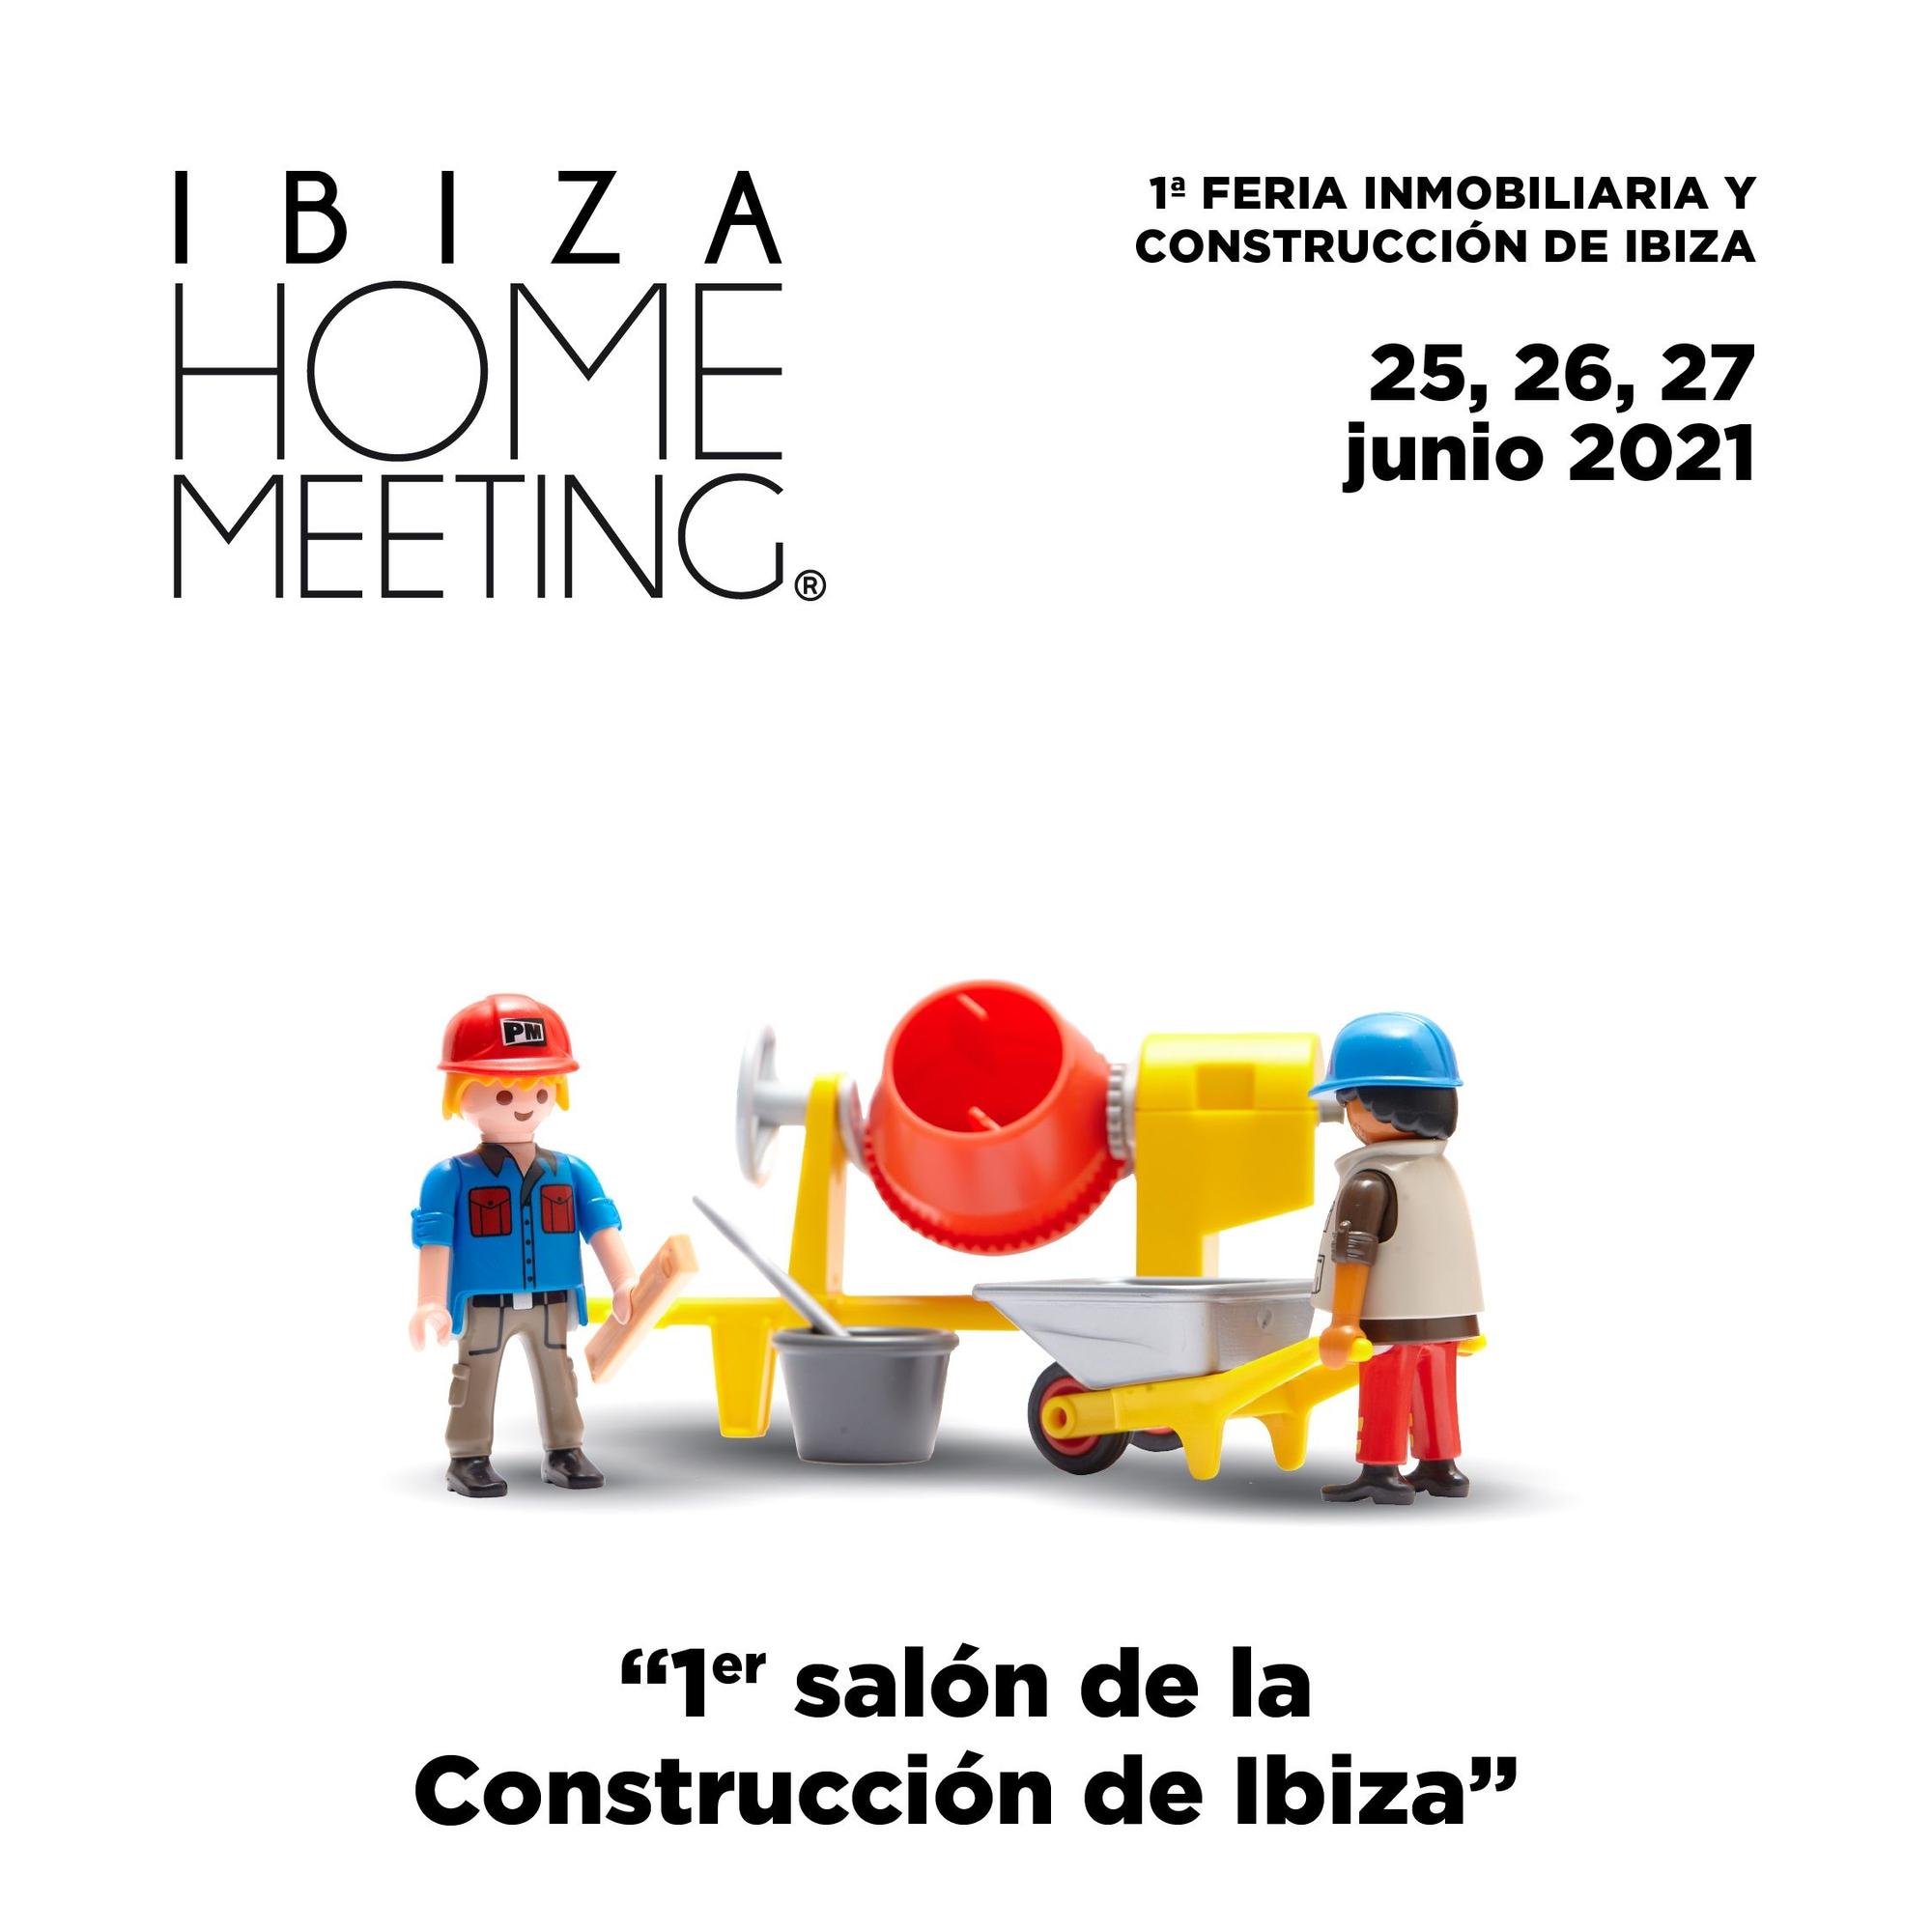 Ibiza Home Meeting se celebrará del 25 al 27 de junio de 2021 en el recinto ferial de Ibiza